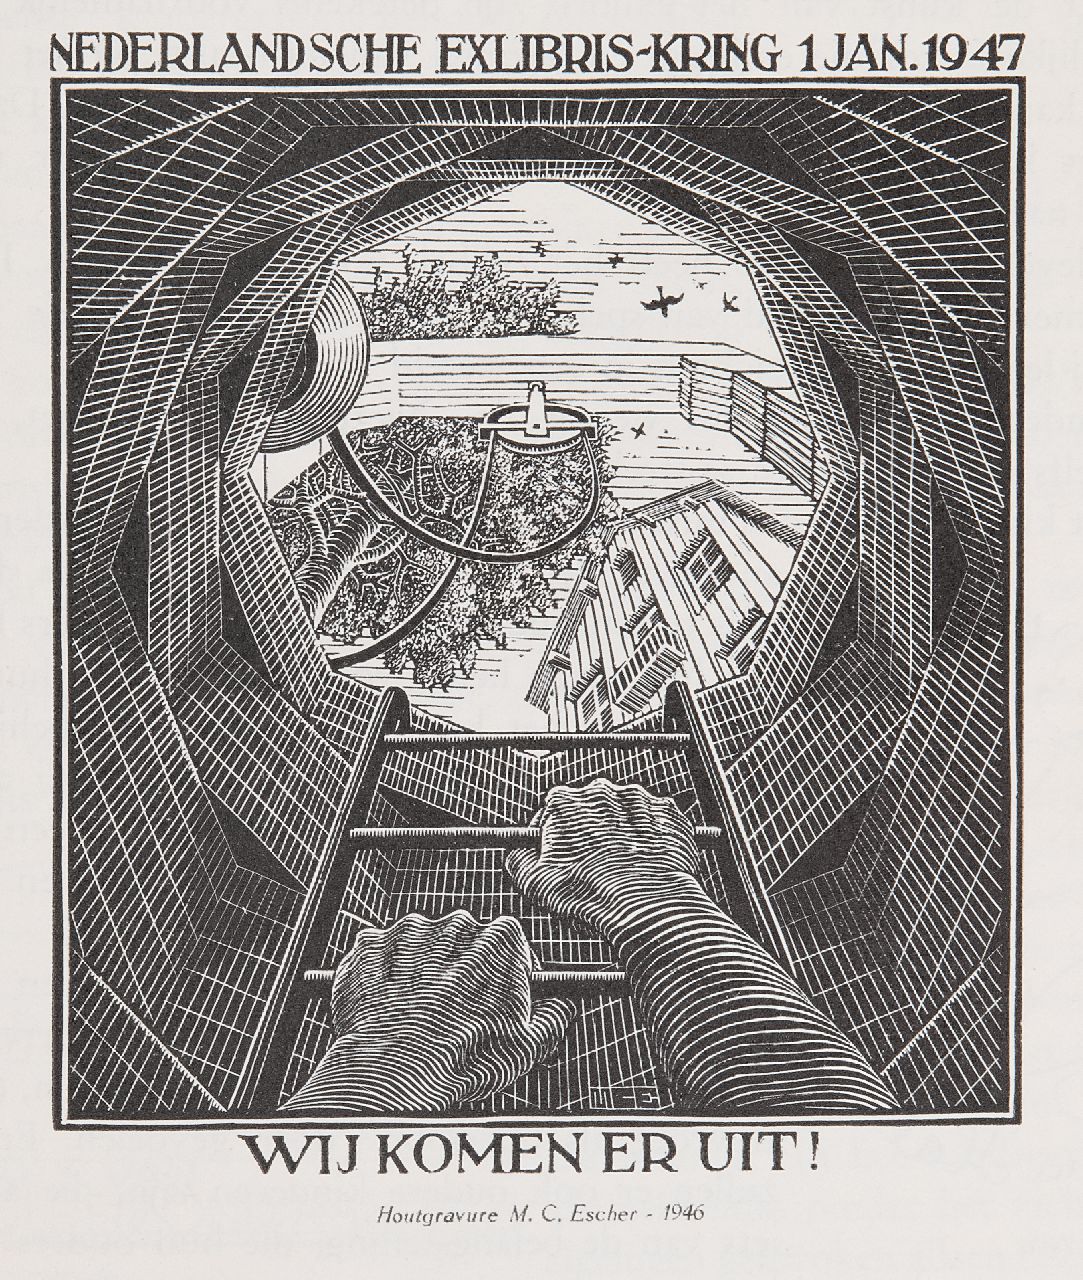 Maurits Cornelis Escher | Wij komen er uit! Illustration in memorial book of the Dutch Exlibris-Kring, 1947, wooden engraving, 12.0 x 10.0 cm